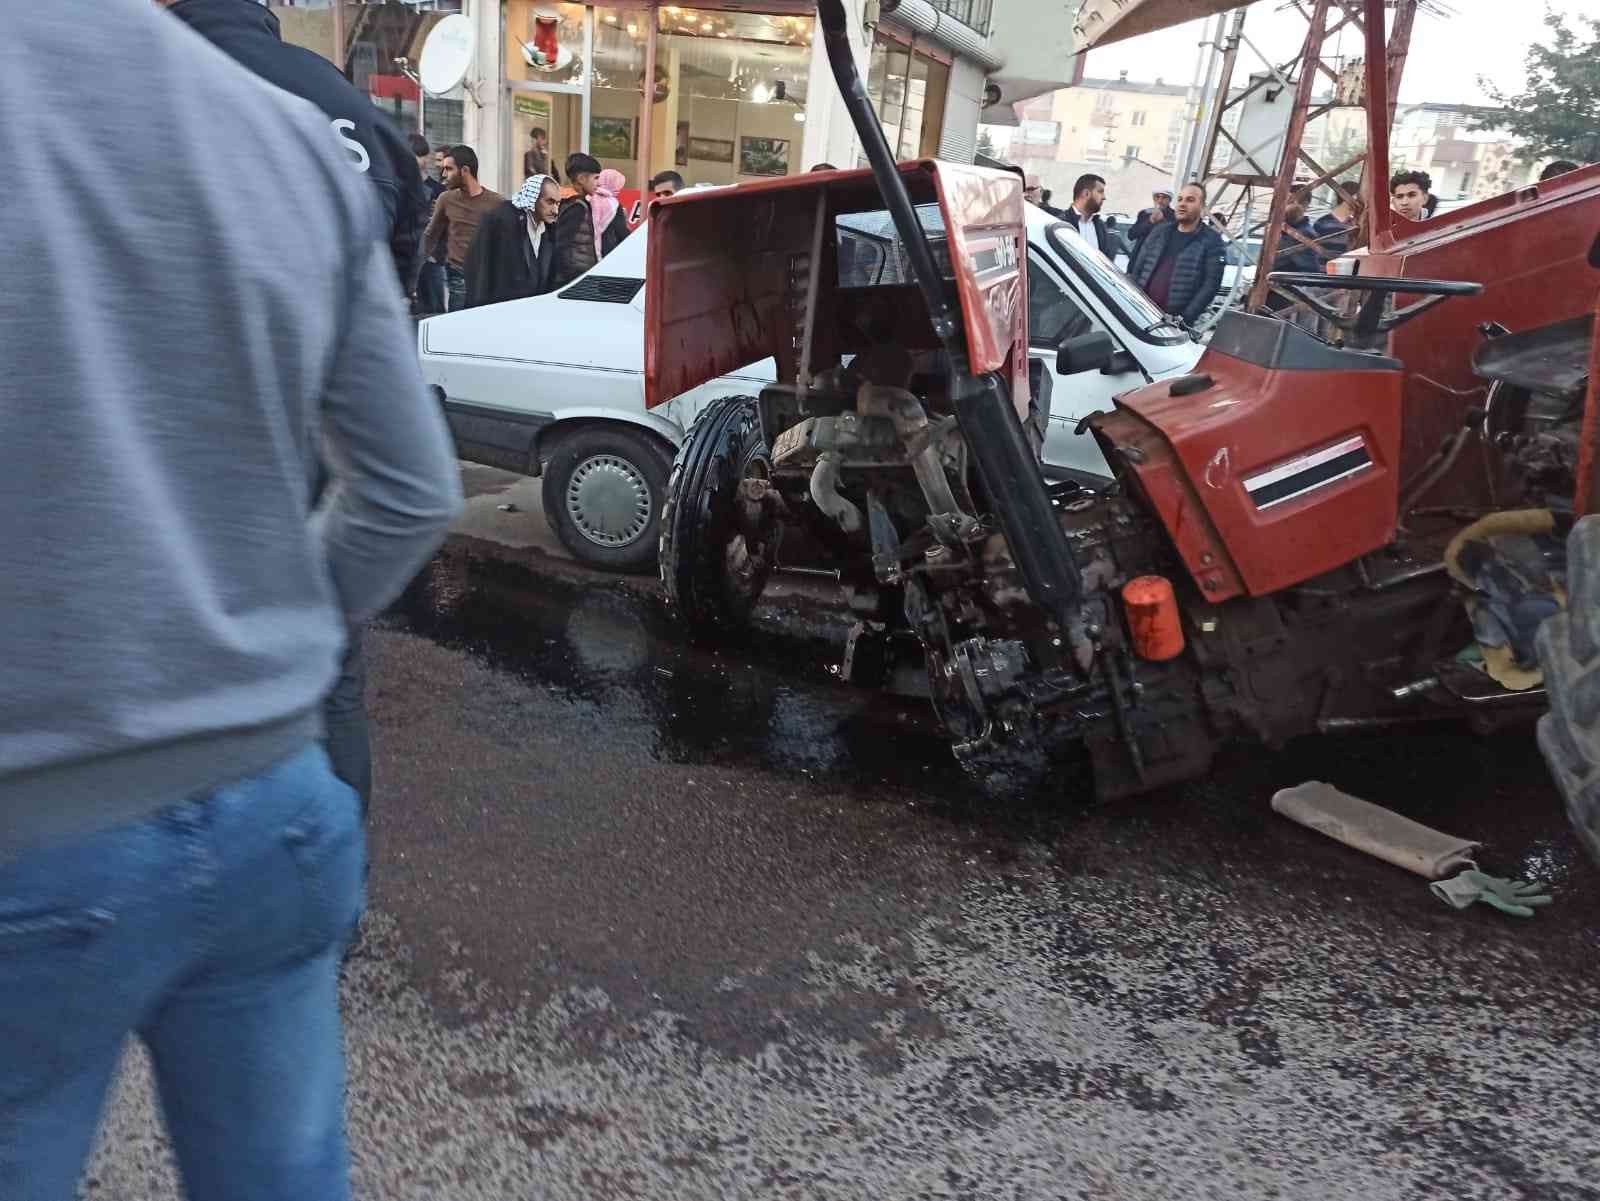 Otomobil ile çarpışan traktör ikiye bölündü: 4 yaralı #sanliurfa